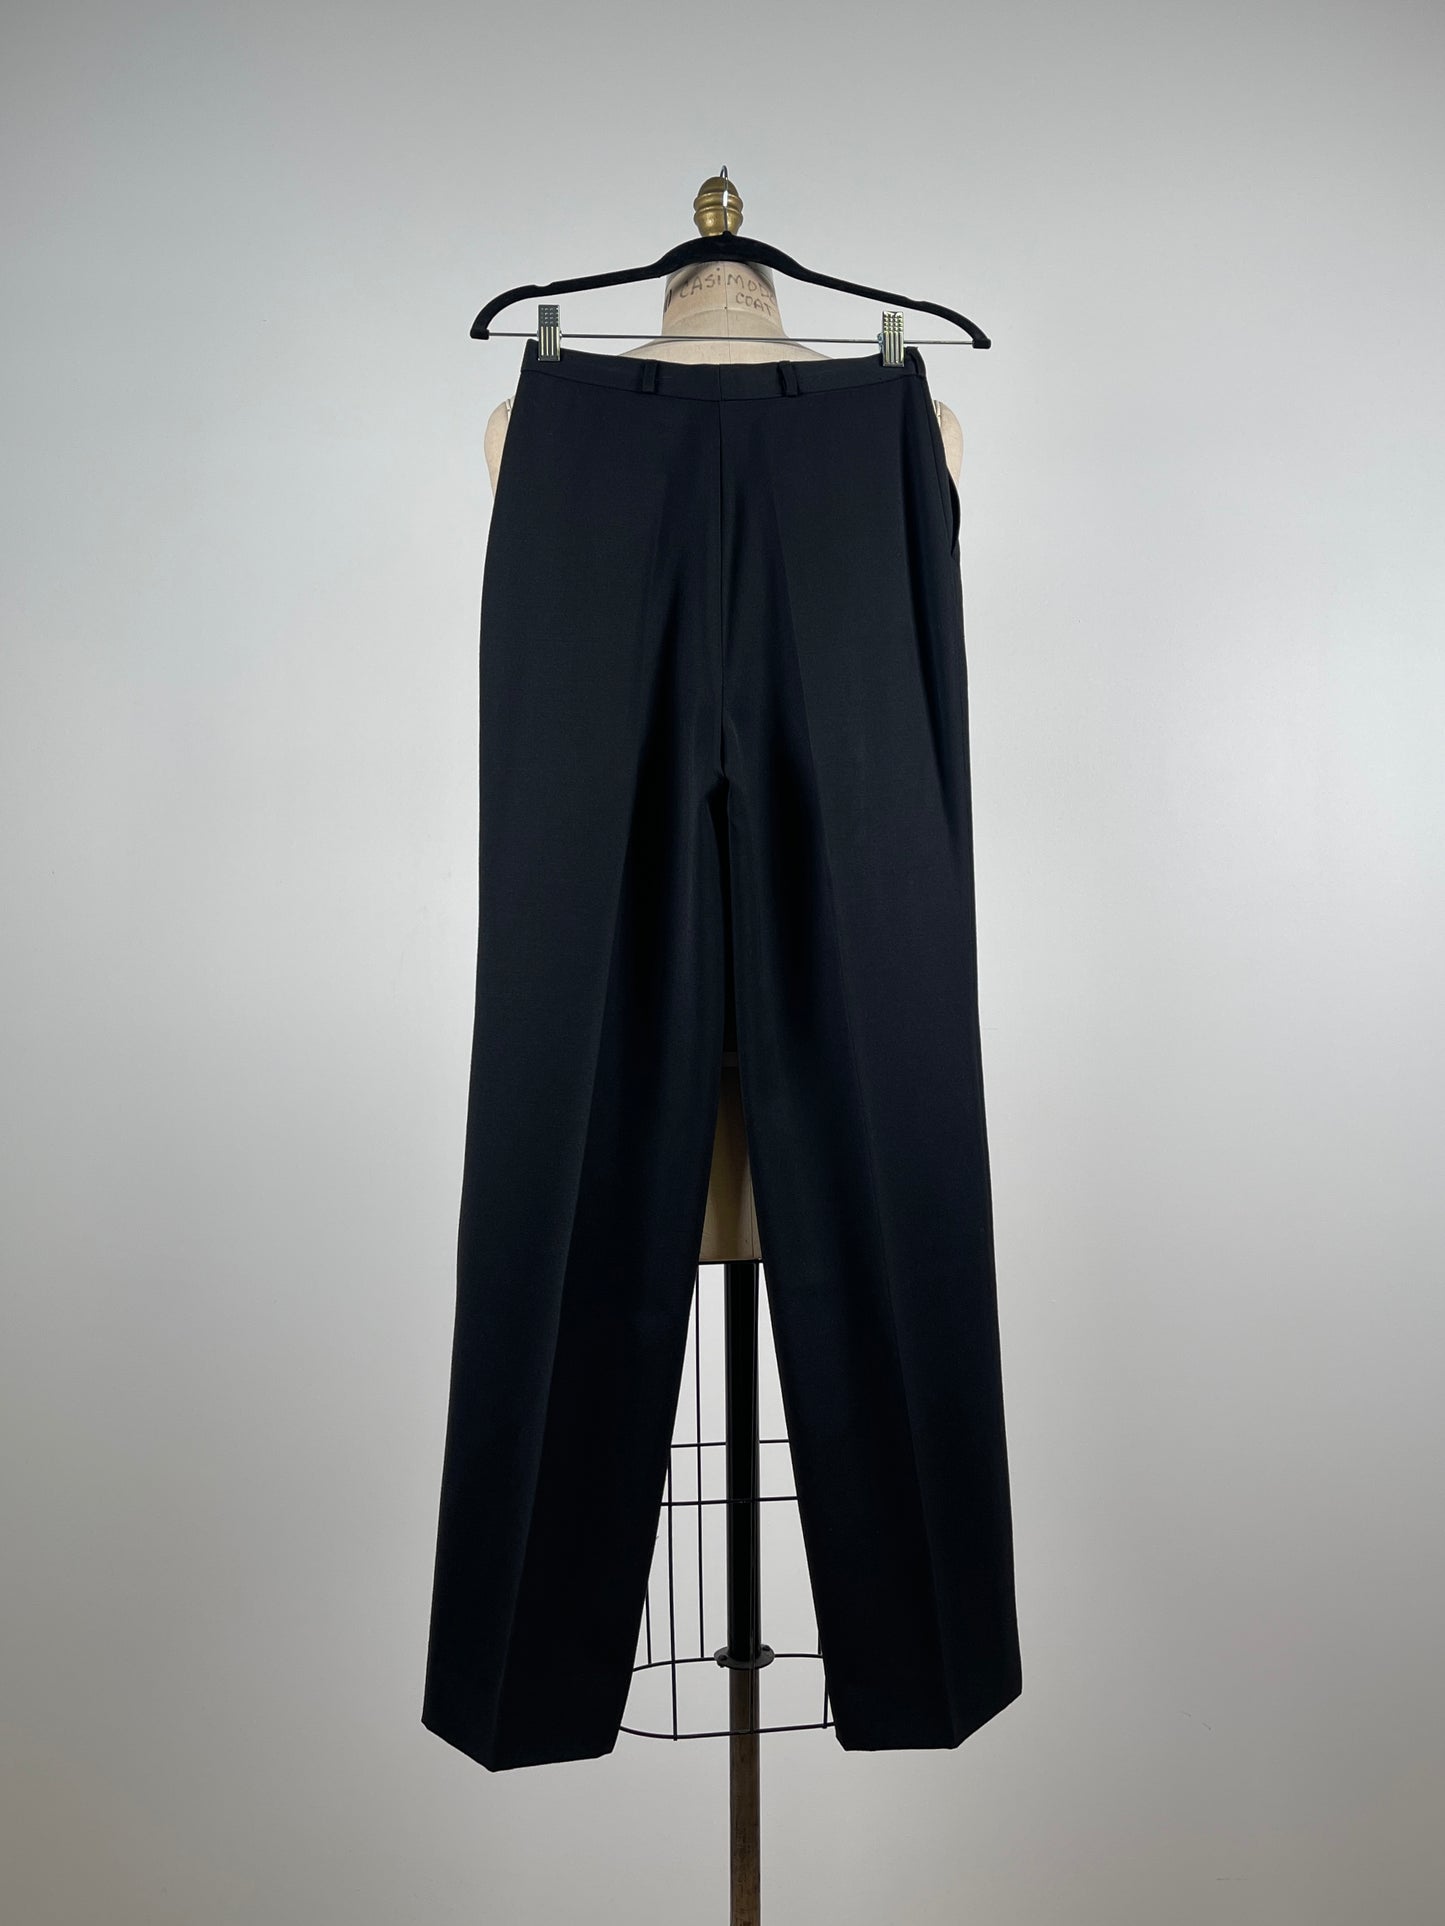 Pantalon noir à pinces en pure laine vierge (XS)